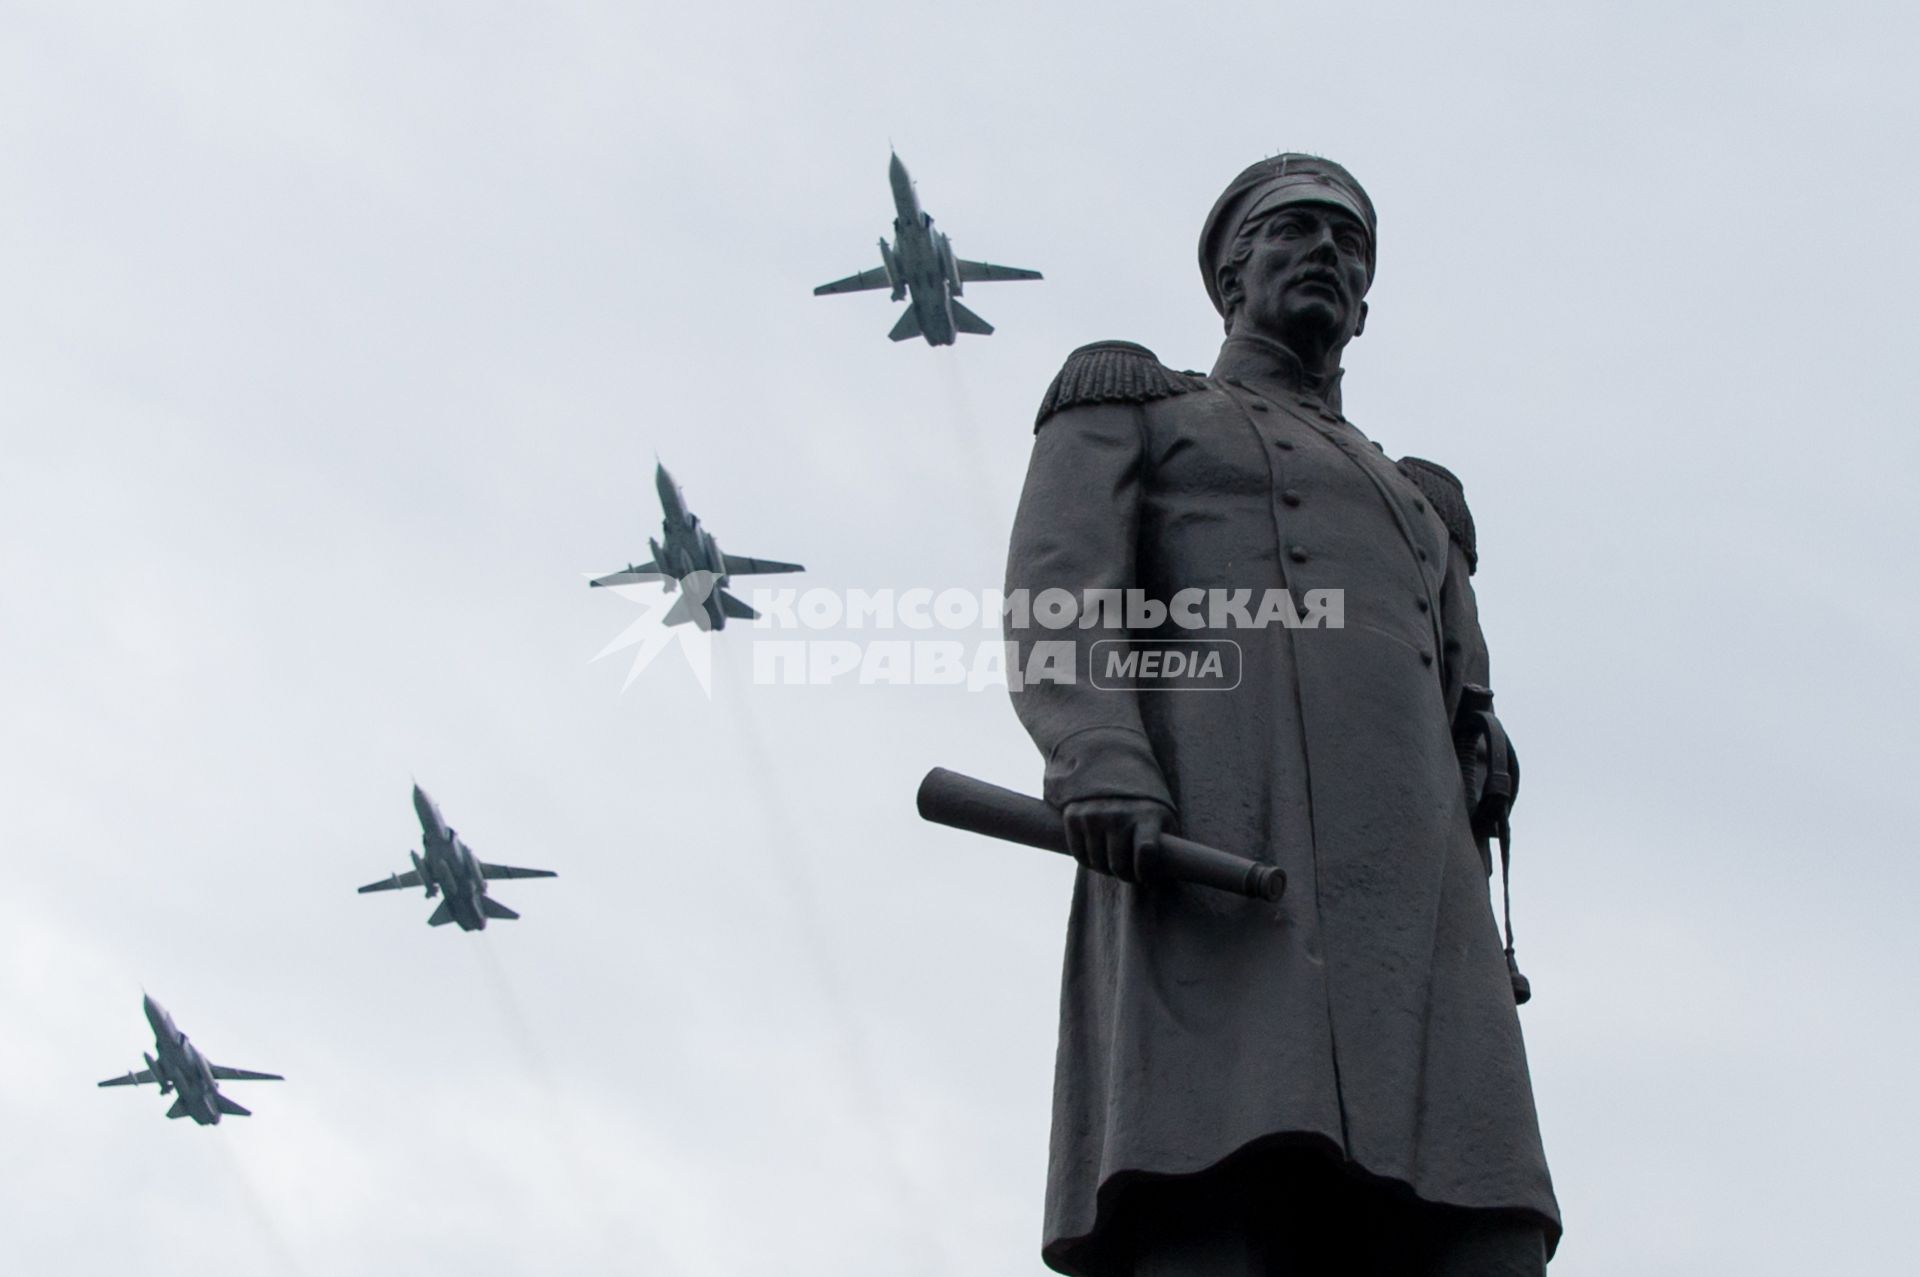 Крым, Севастополь.  Воздушная часть парада в ознаменование 75-летия Победы в Великой Отечественной войне 1941-1945 годов.